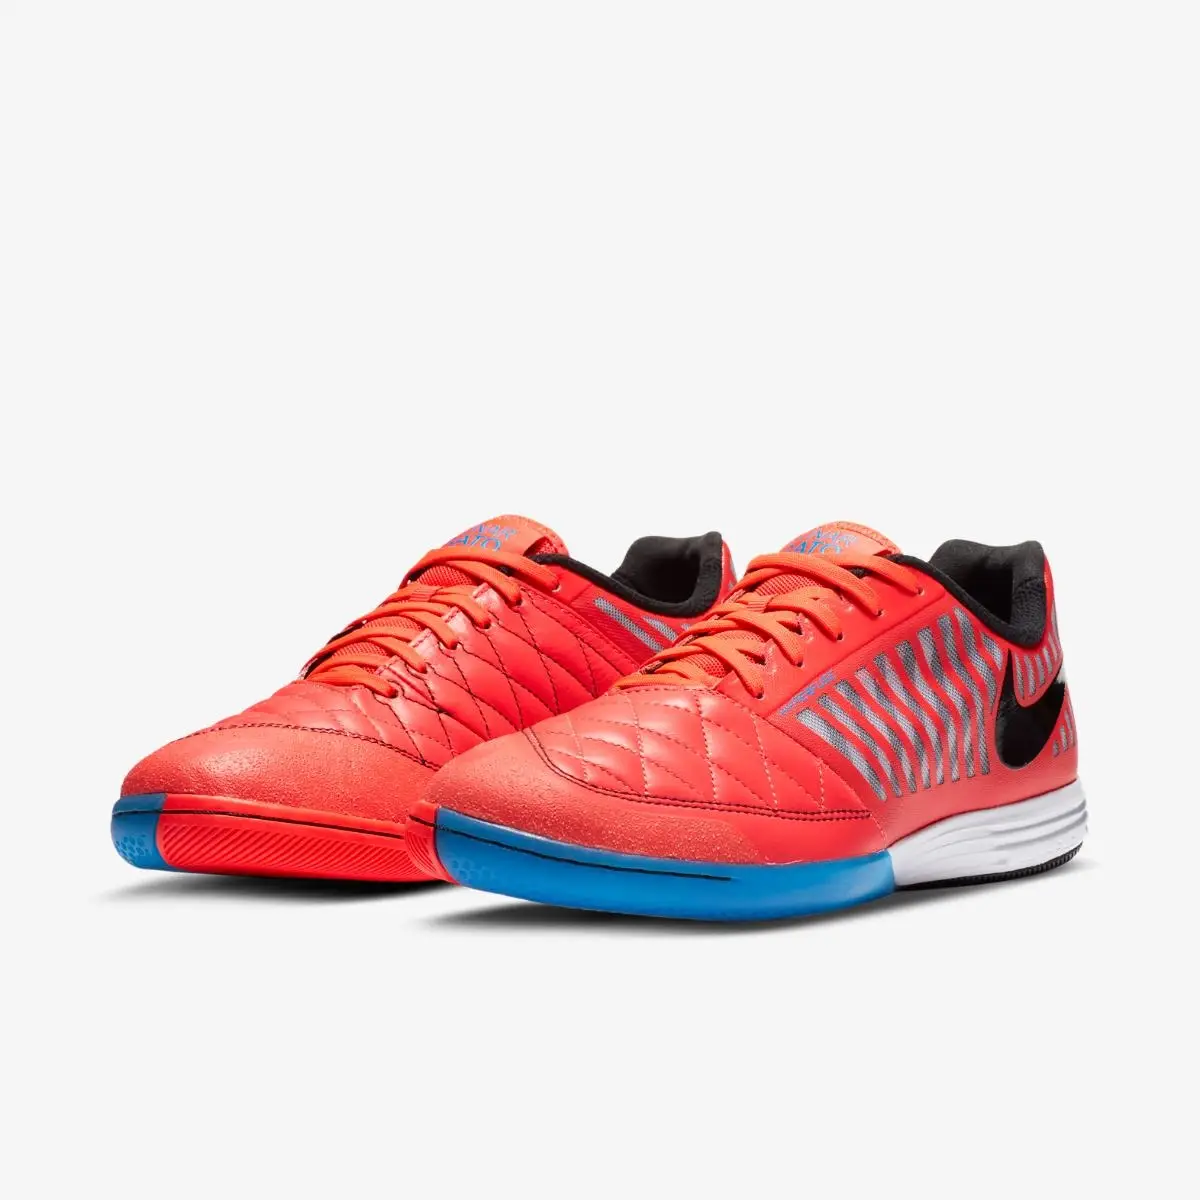 Футзальные бутсы Nike Lunar Gato 2 червоний - 40,5